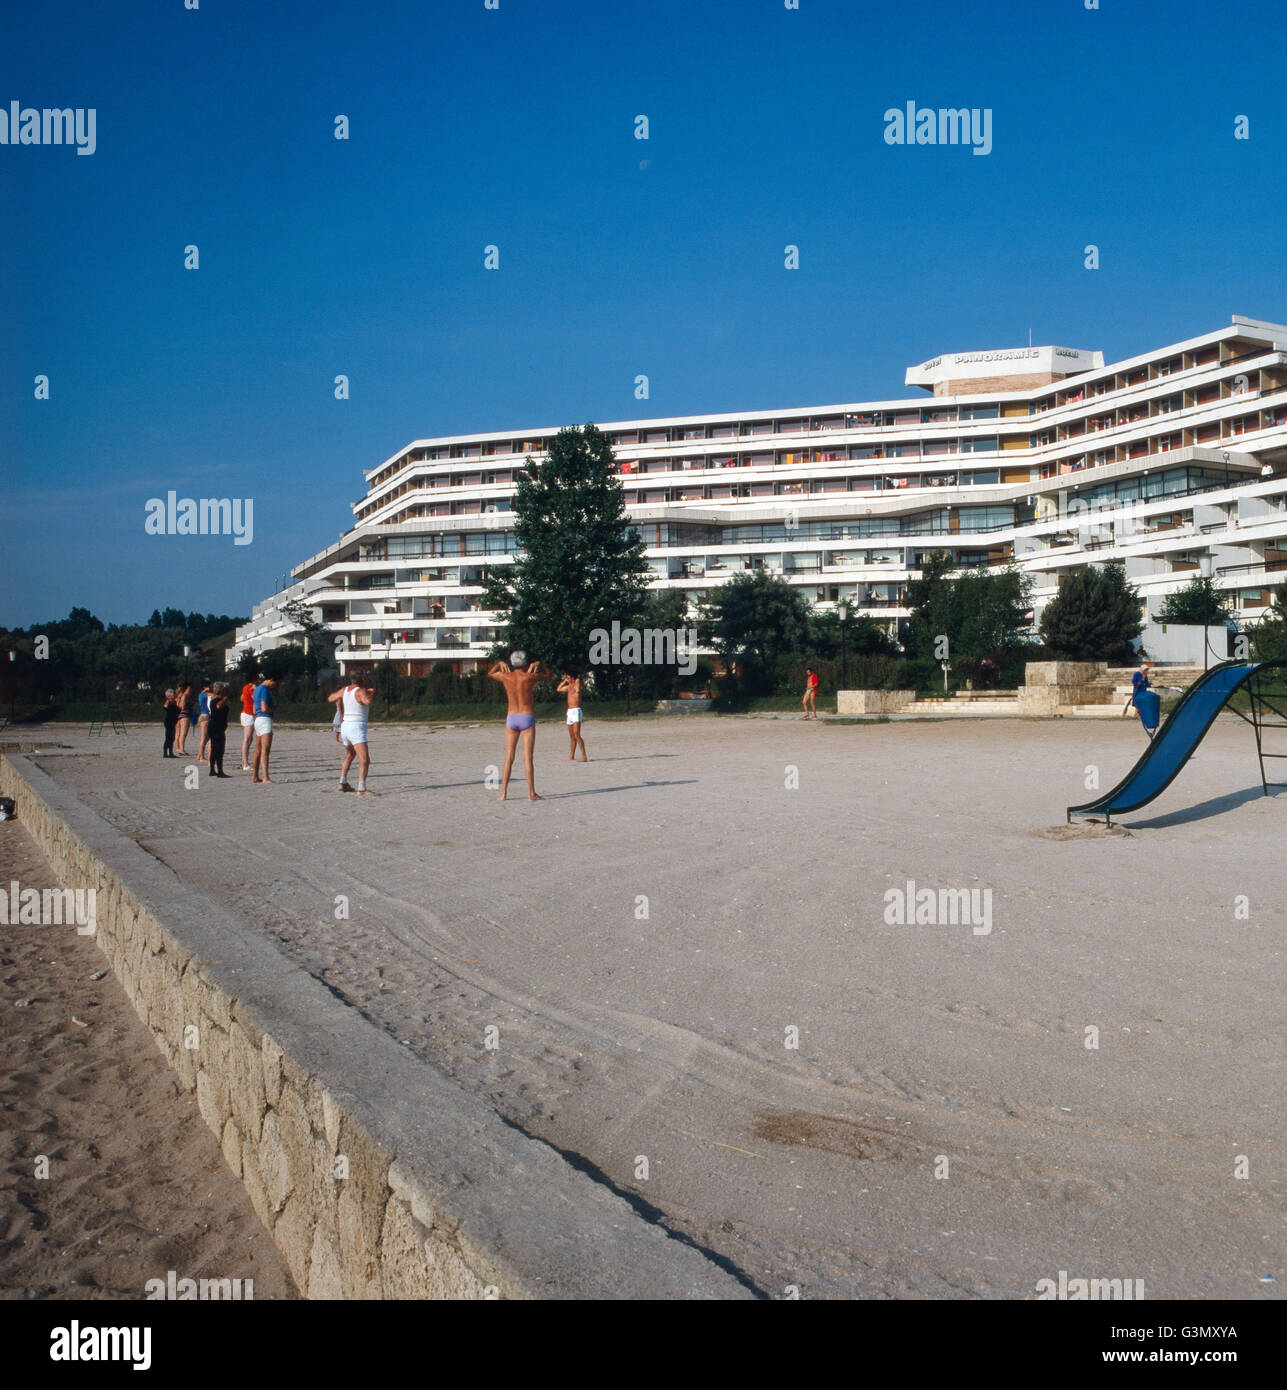 Urlaub im Hotel Panoramic im Badeort Neptun, Rumänien 1970er Jahre. Vacanza in Hotel Panoramic presso la località balneare Nettuno, la Romania degli anni settanta. Foto Stock